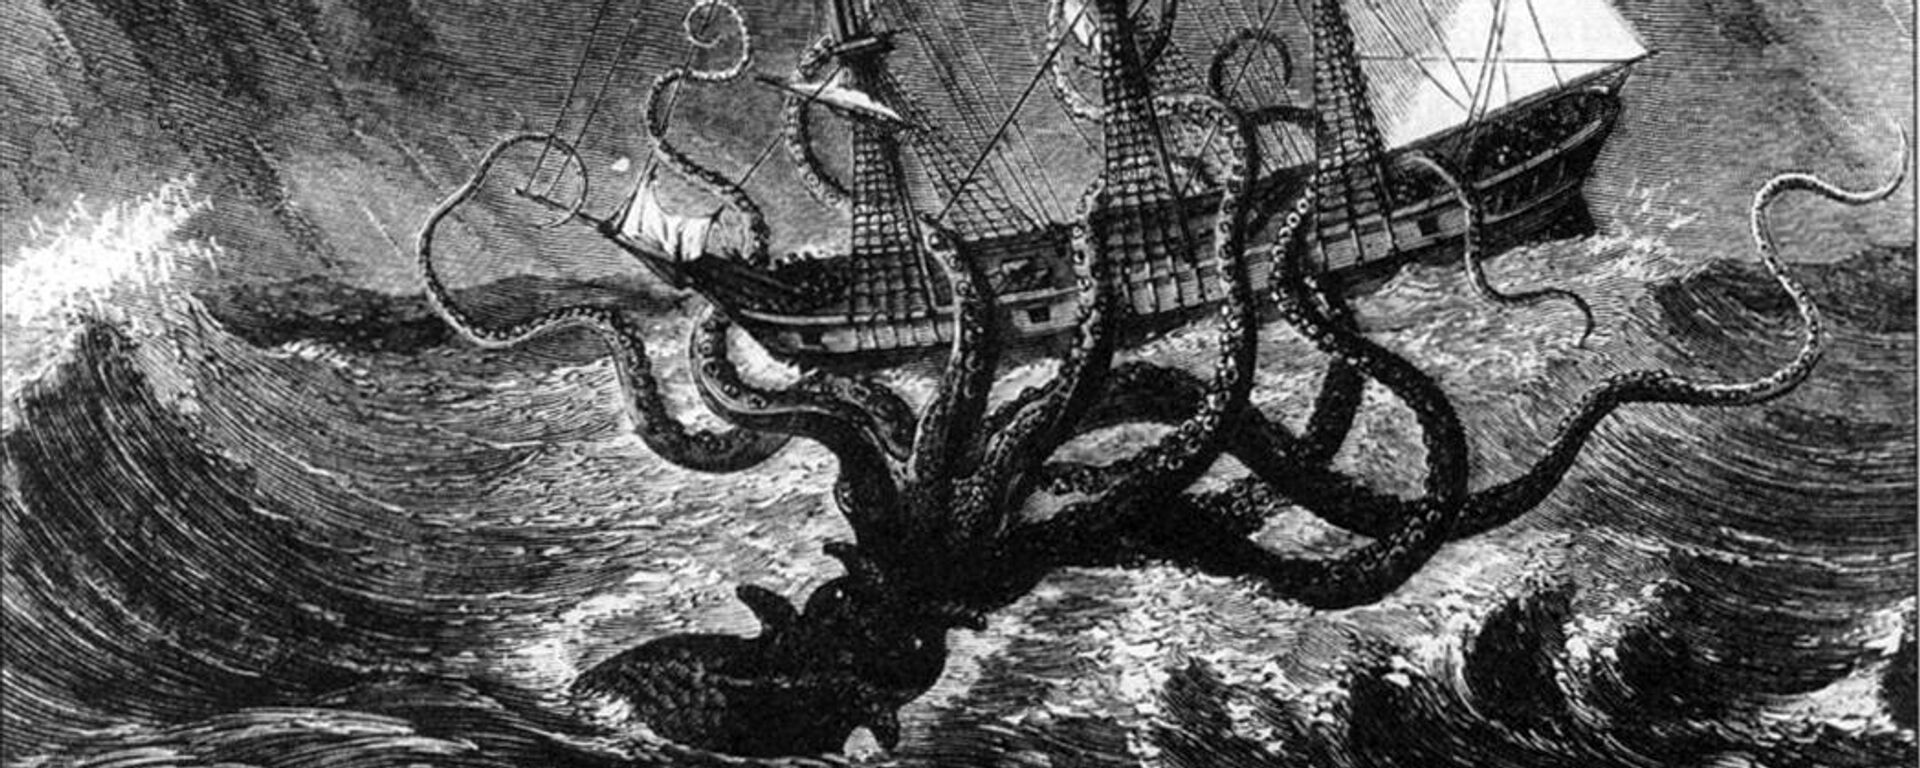 El monstruo marino Kraken en acción contra un barco. - Sputnik Mundo, 1920, 15.01.2023